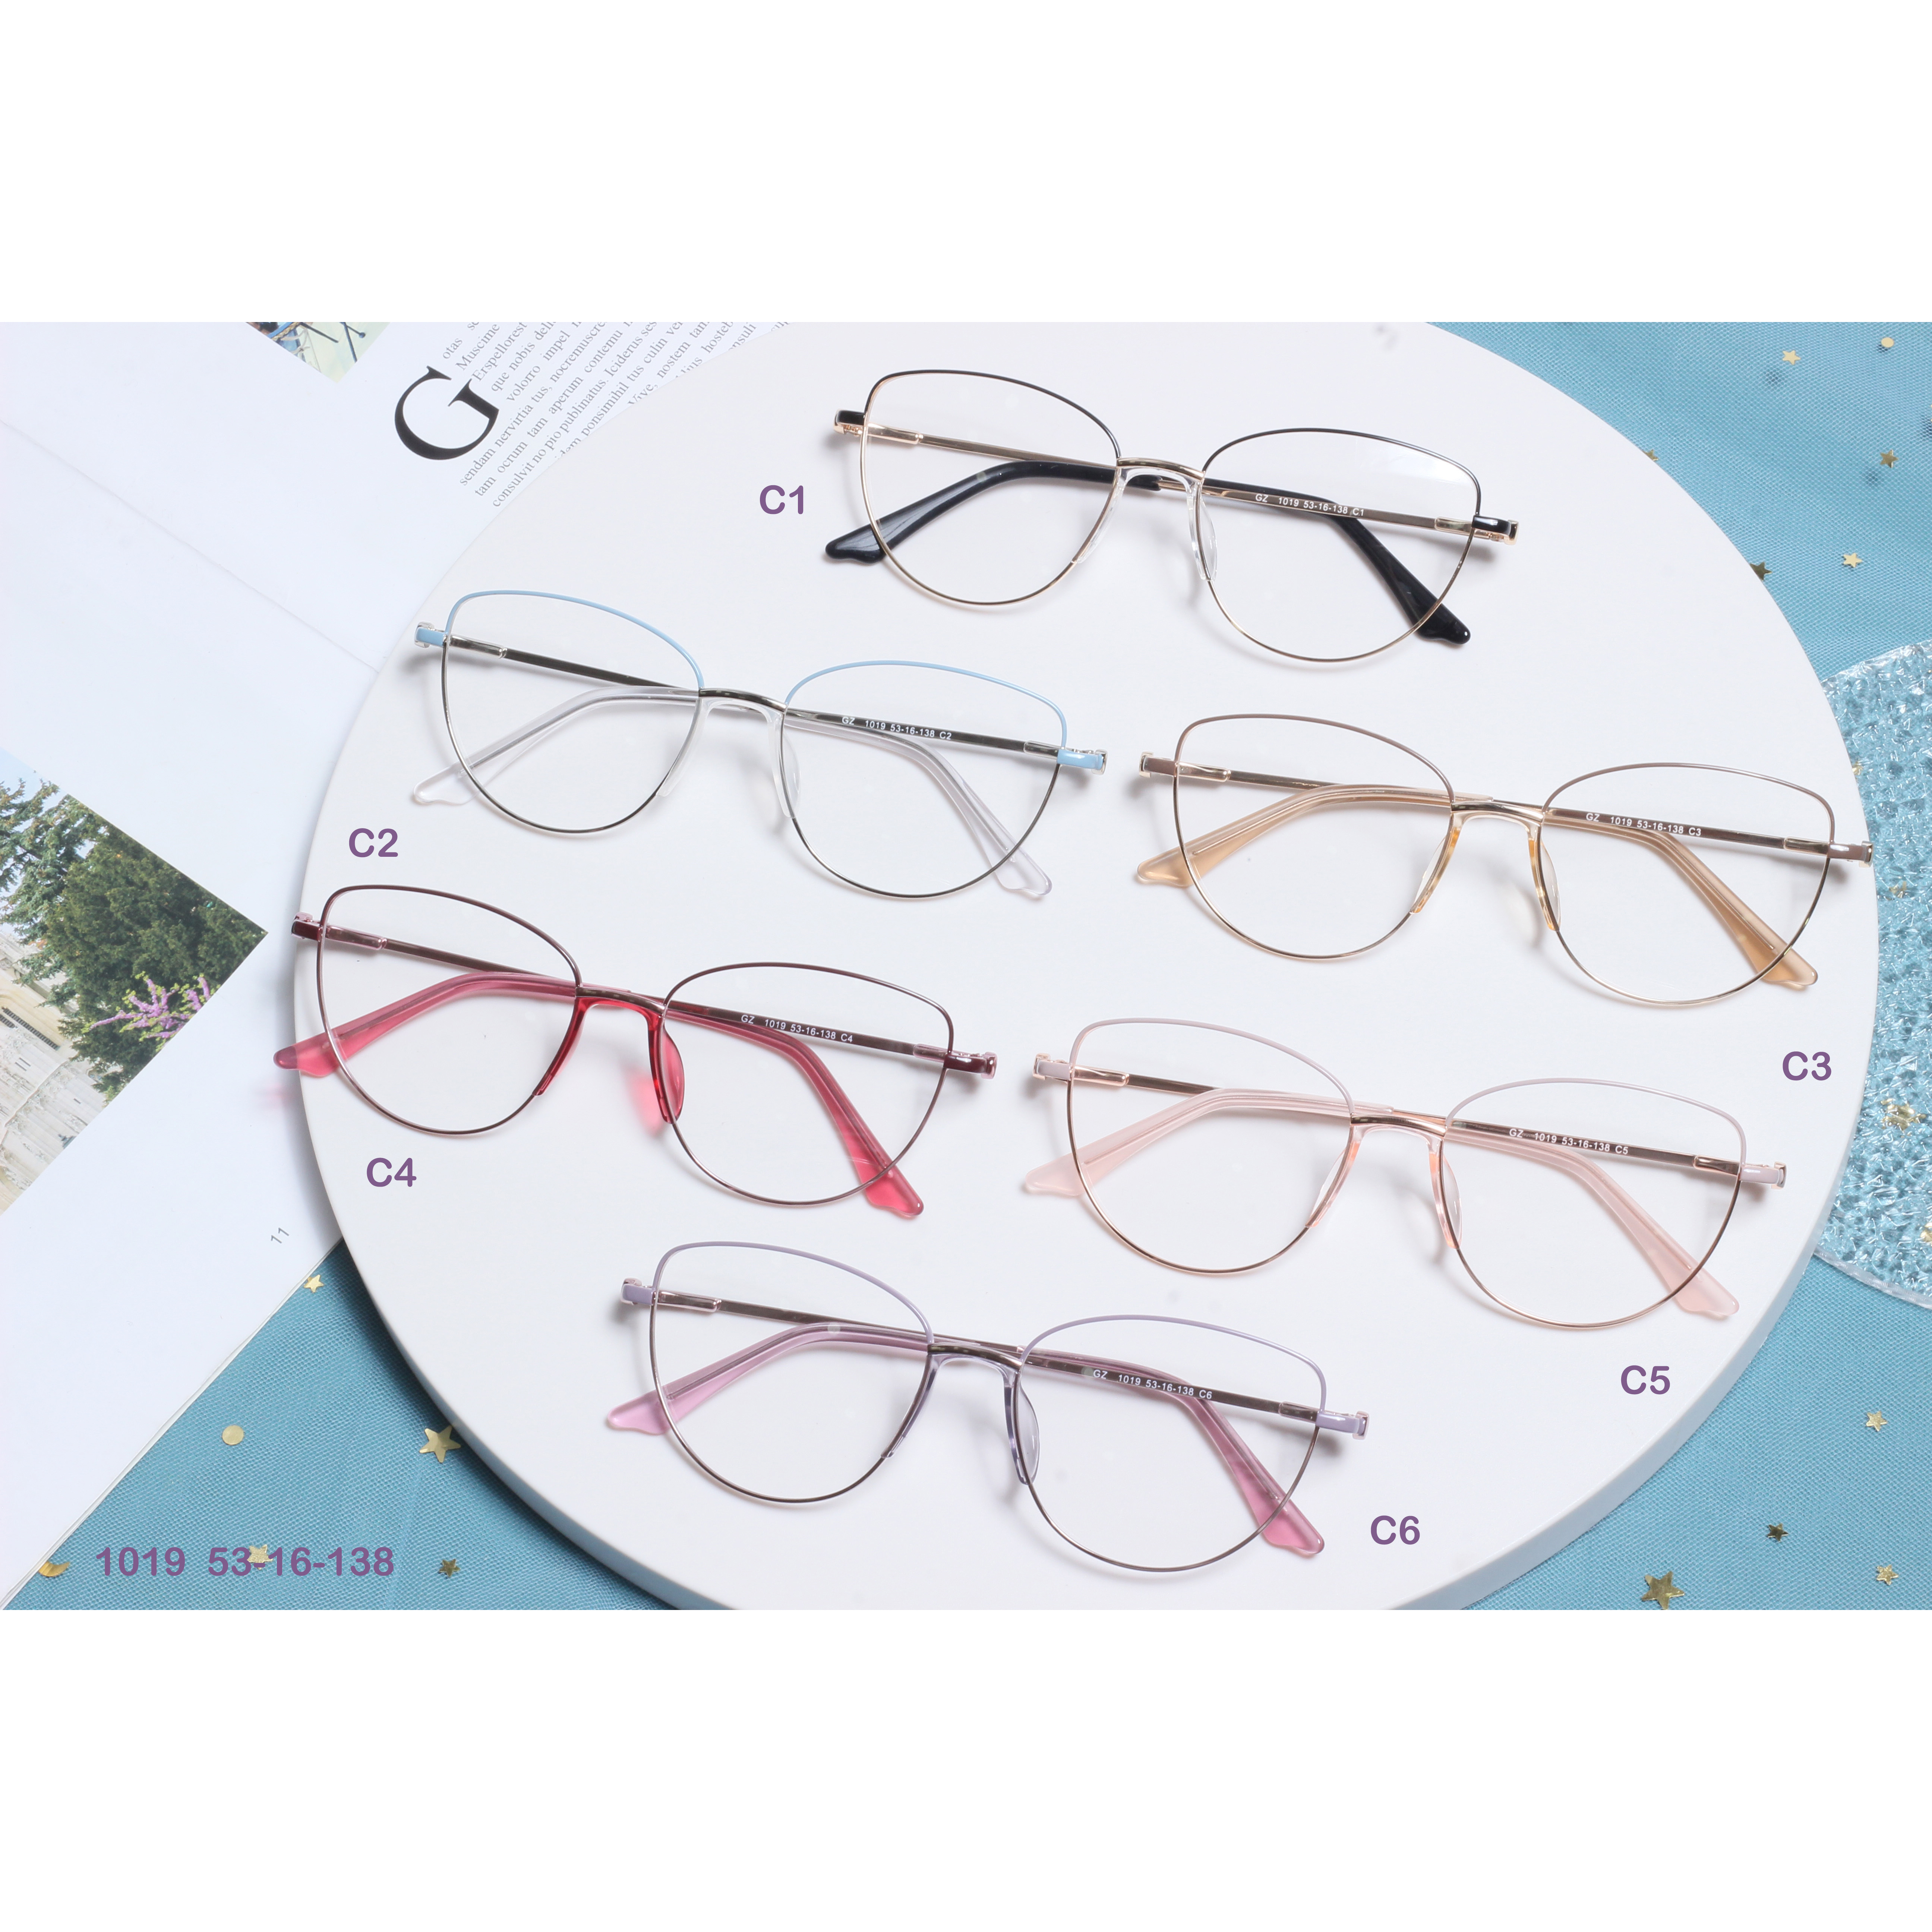 Olcsó áron keret fém szemüvegkeret készletre kész Optikai